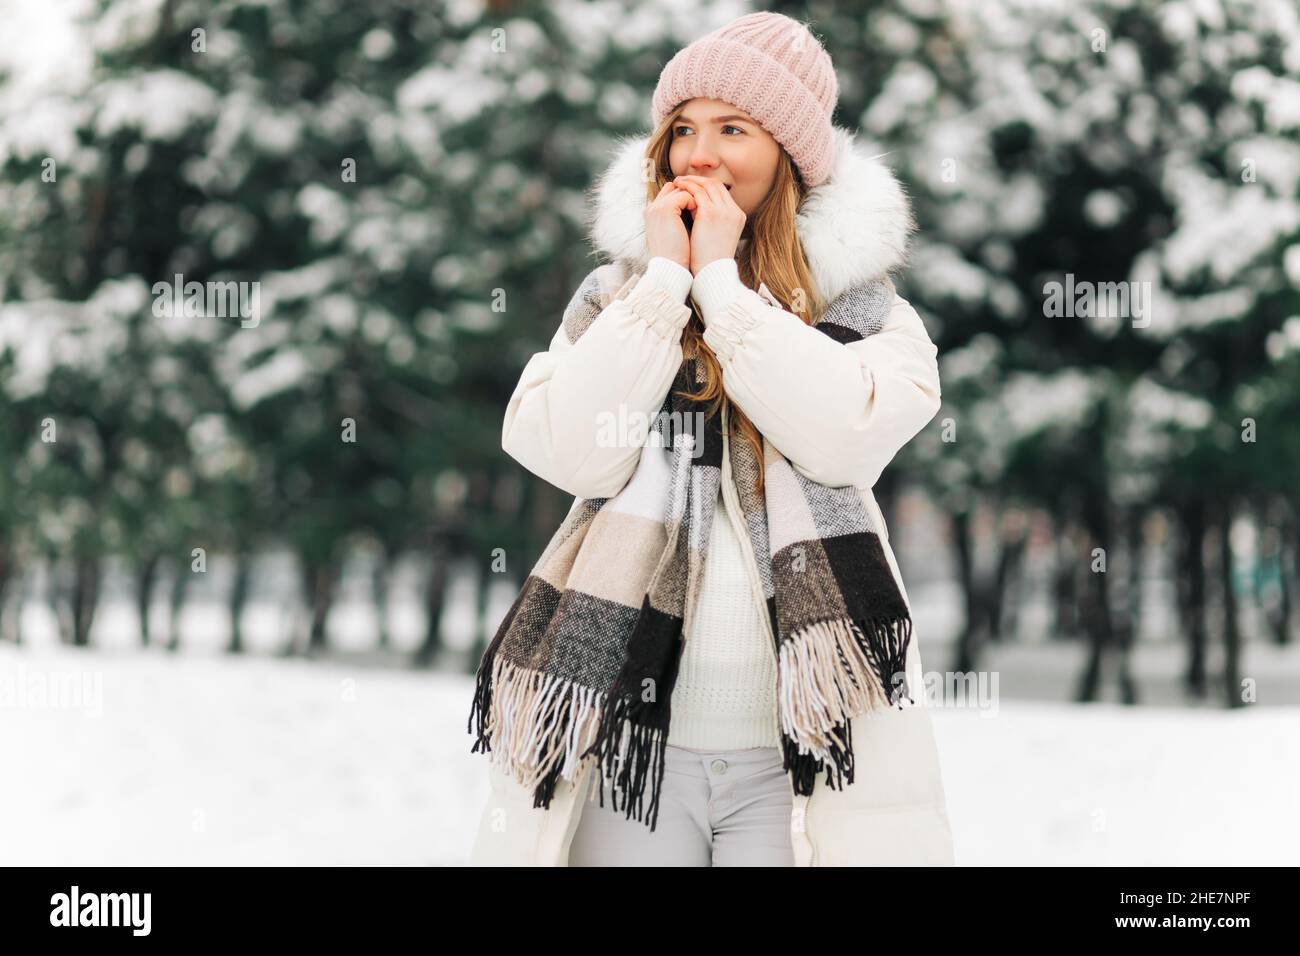 Retrato de una mujer de invierno con ropa de abrigo, la mujer